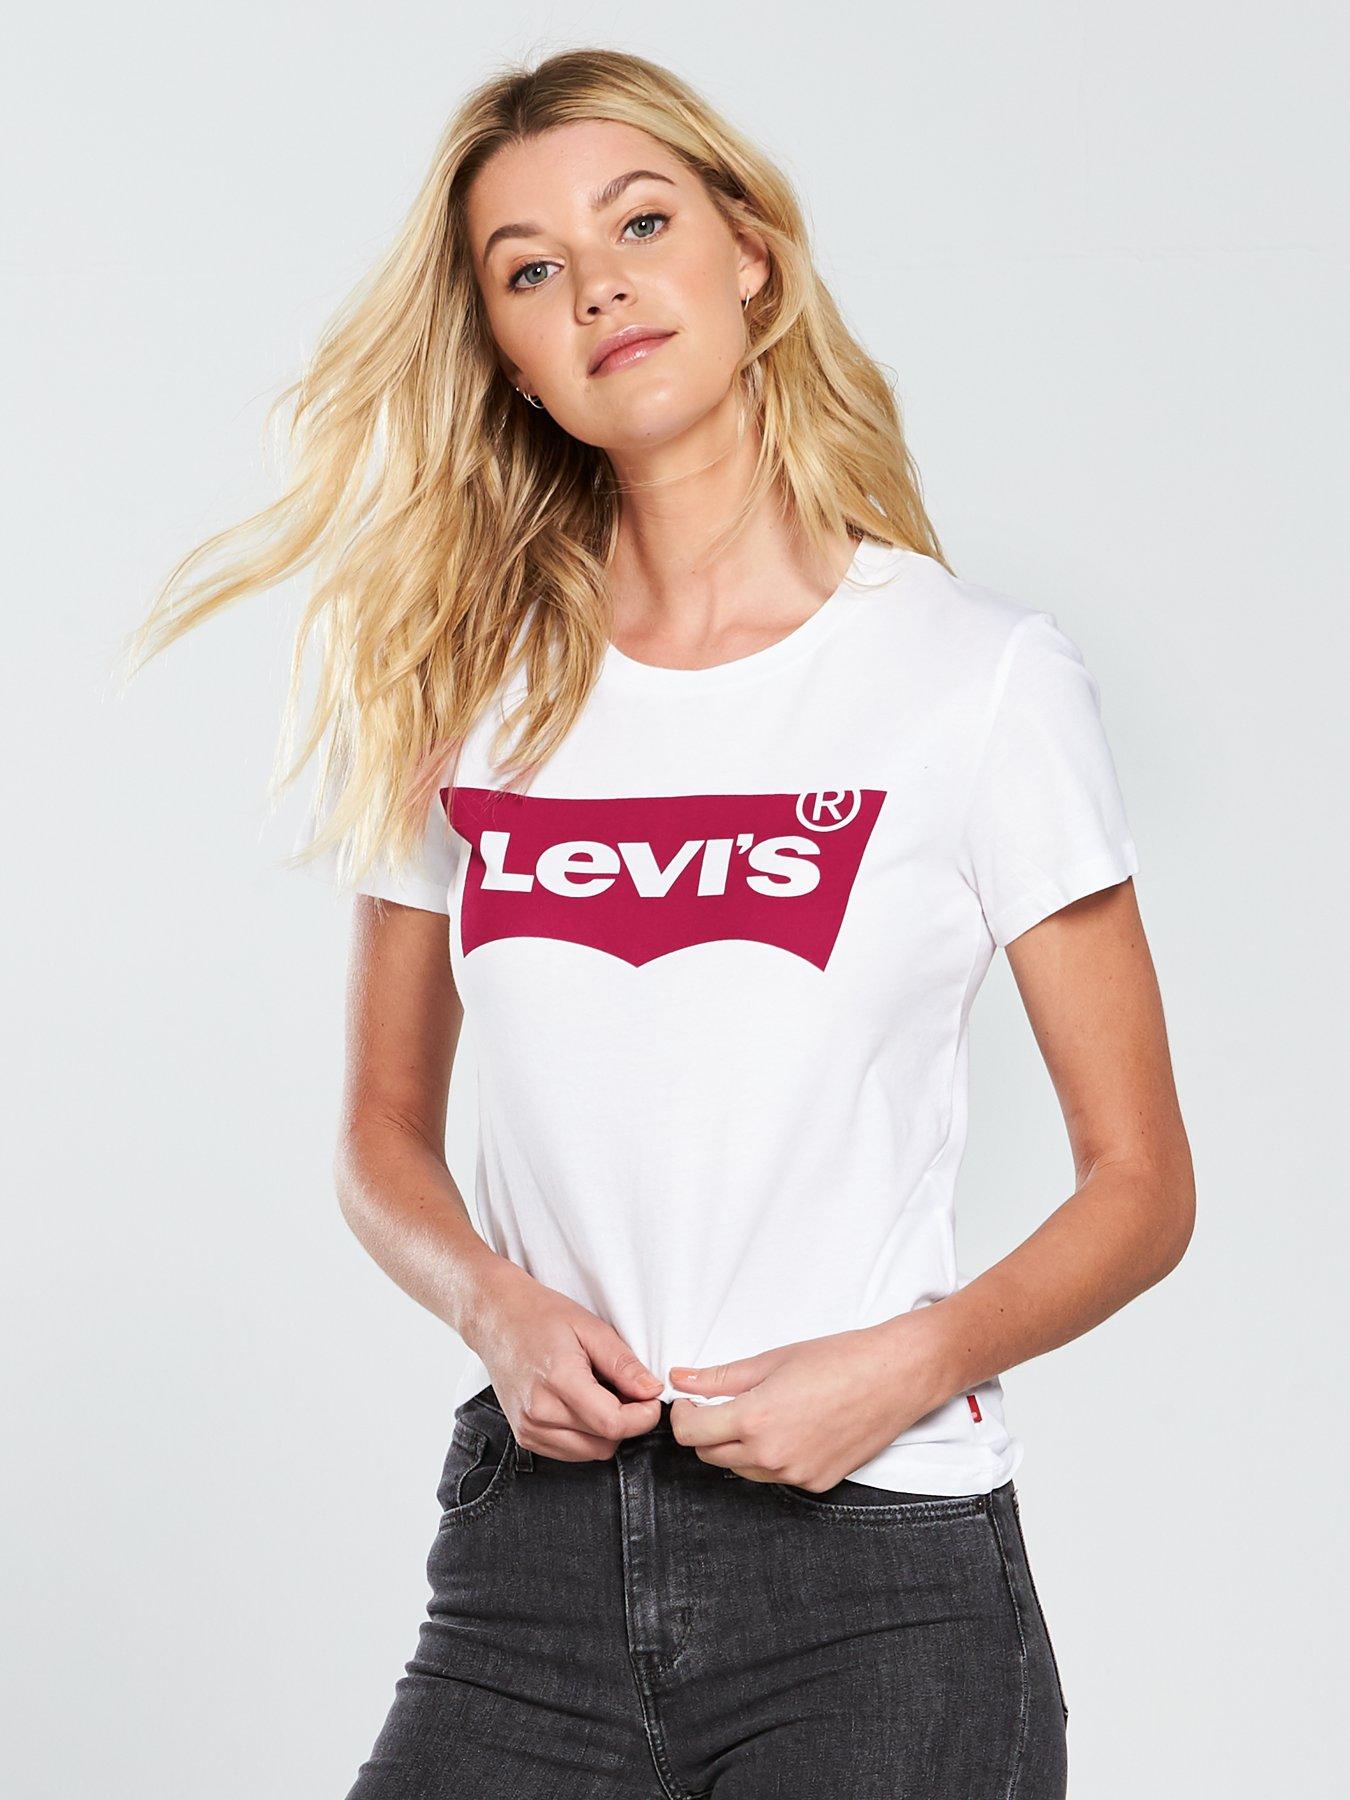 levis tshirt womens